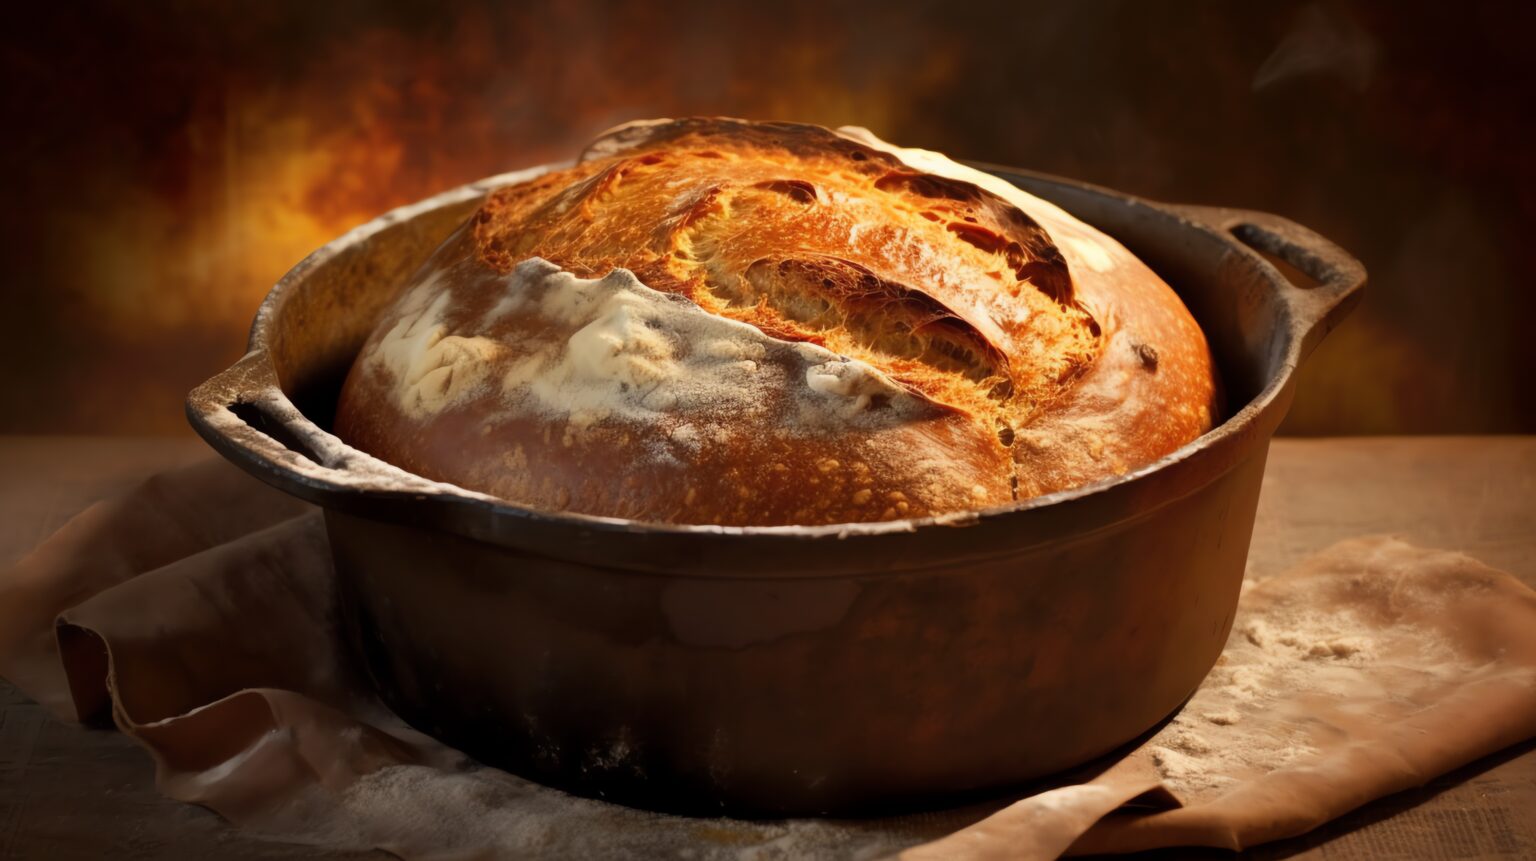 Pane con la biga: lo cuocio in pentola ed è favoloso